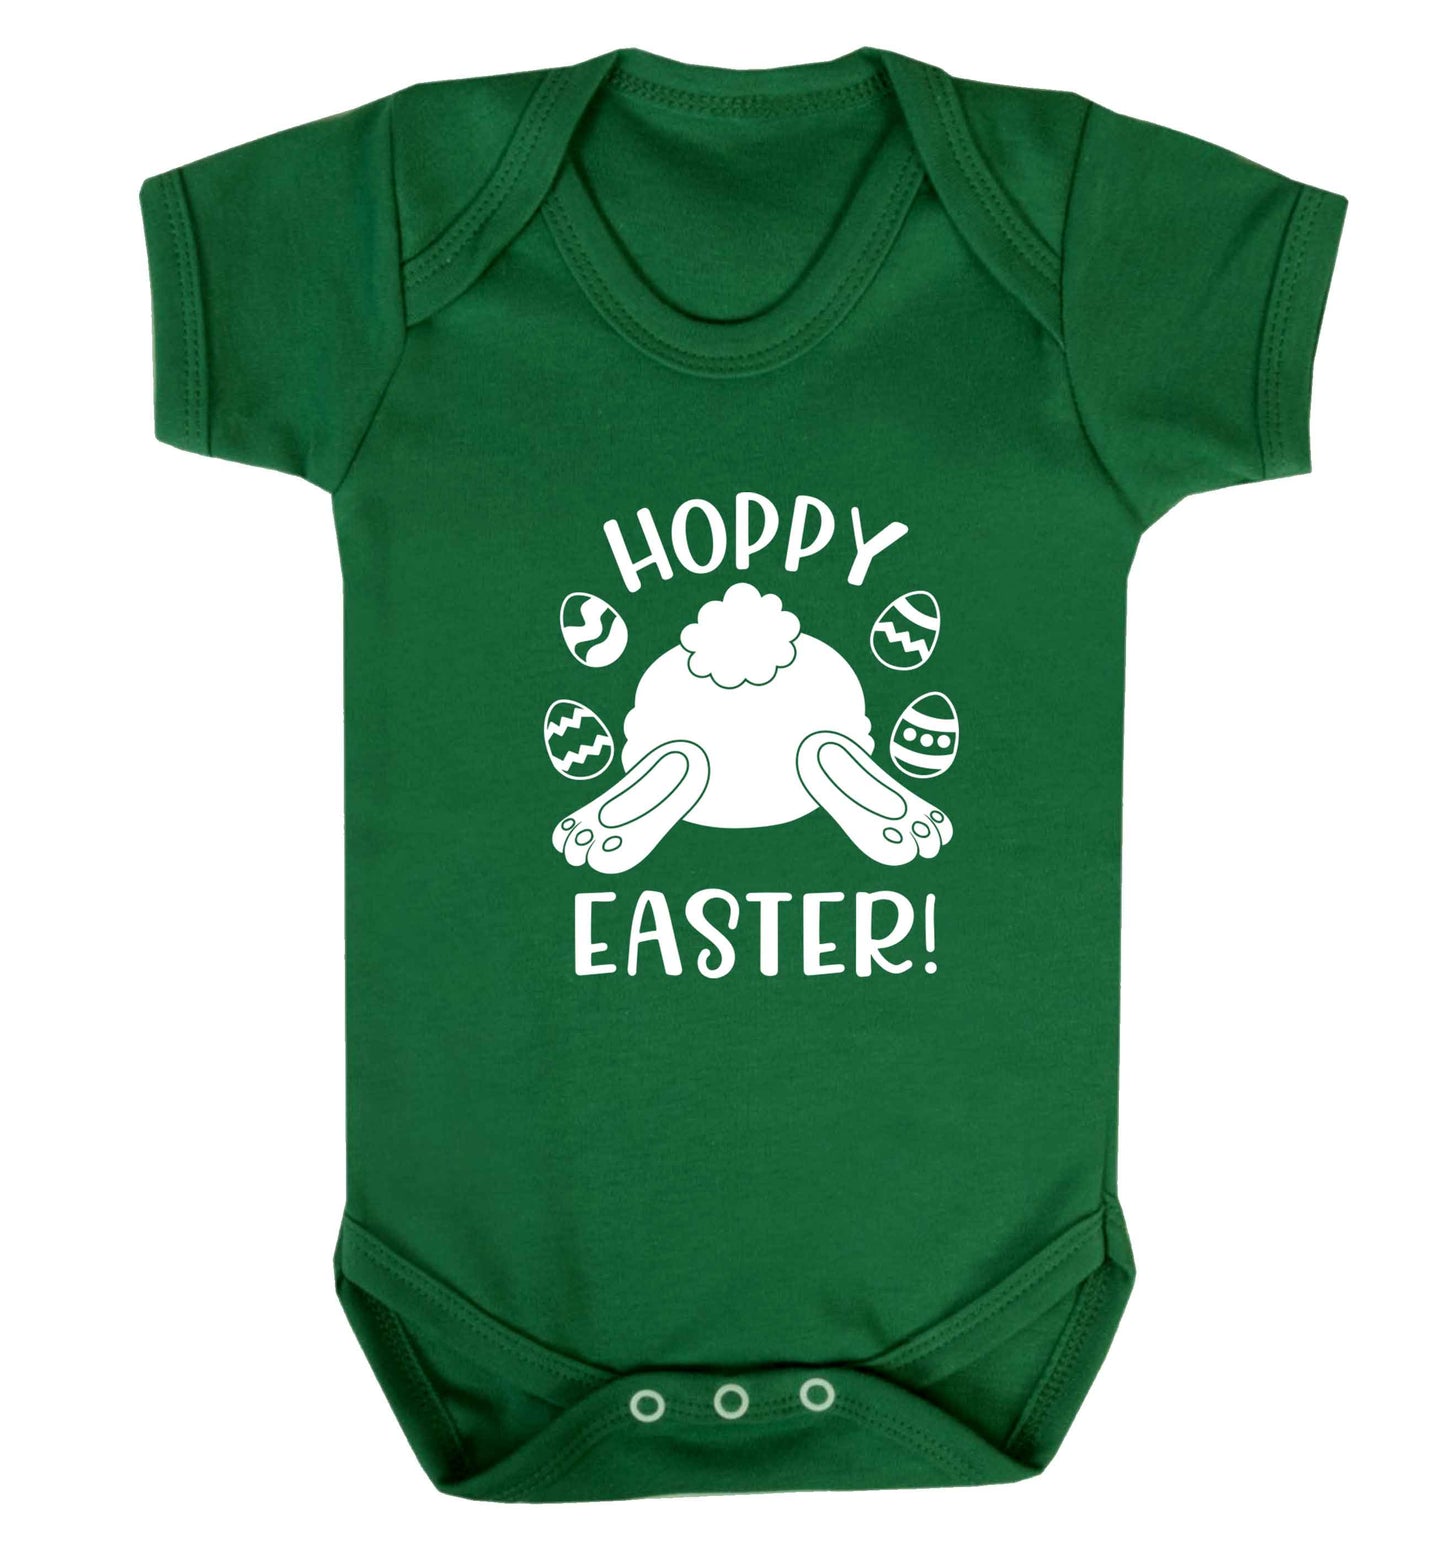 Hoppy Easter baby vest green 18-24 months